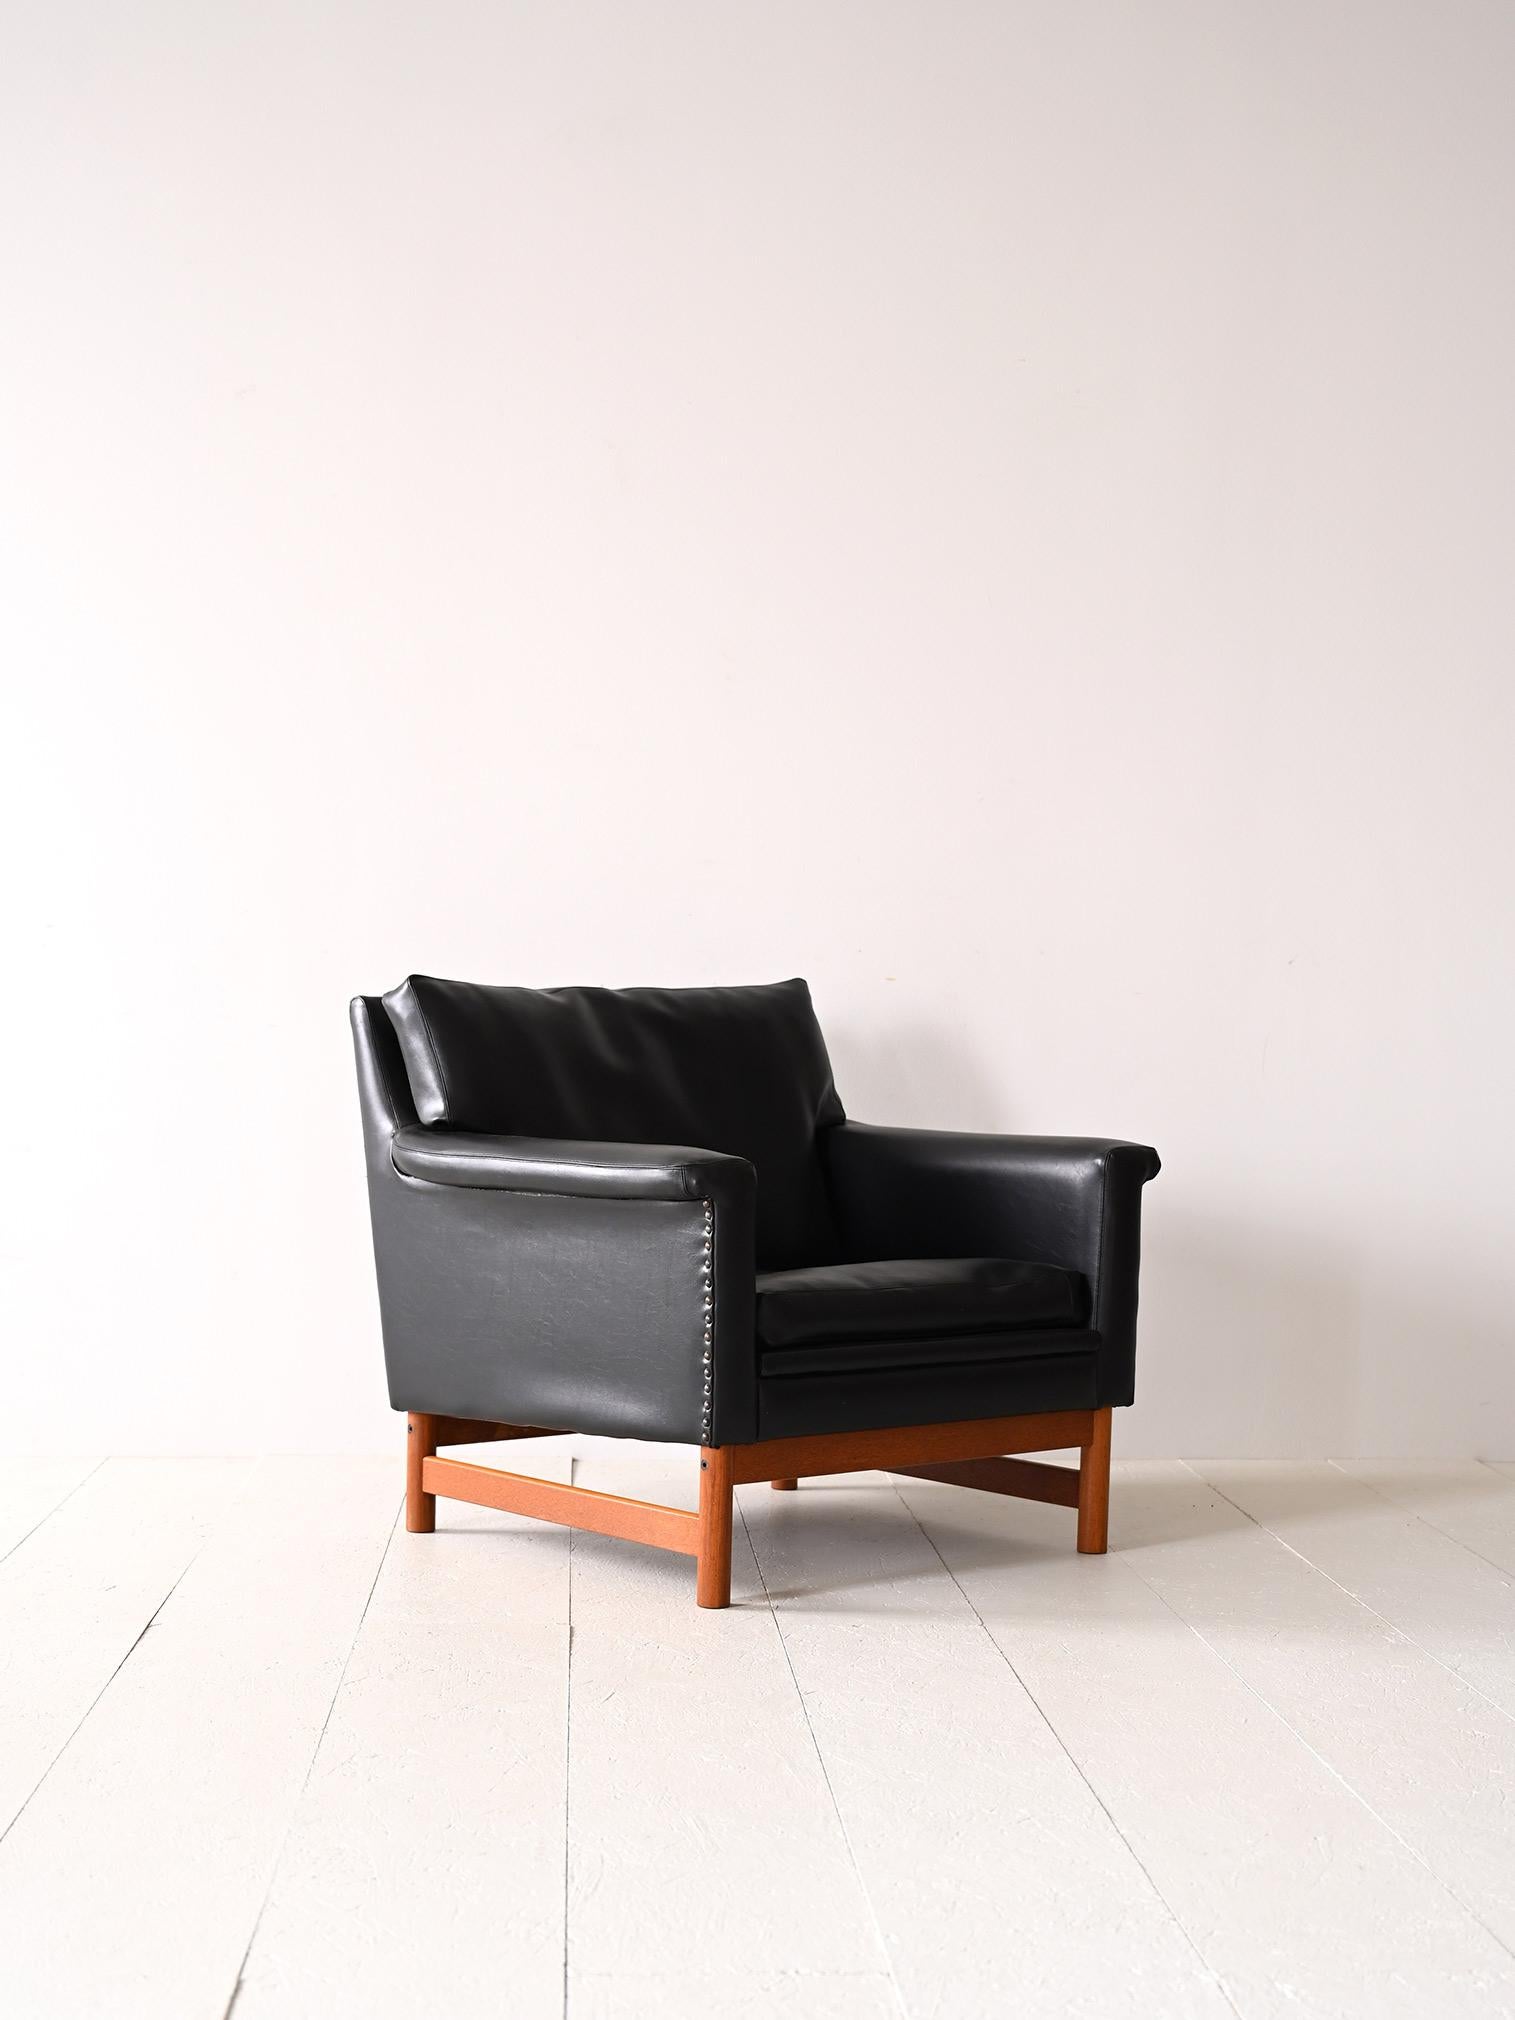 Fauteuil scandinave des années 1960.

Un meuble ancien moderne aux lignes carrées et contemporaines. Formé d'une base en bois sur laquelle repose l'assise rembourrée doublée de similicuir noir. L'état des ressorts et du rembourrage est en bon état